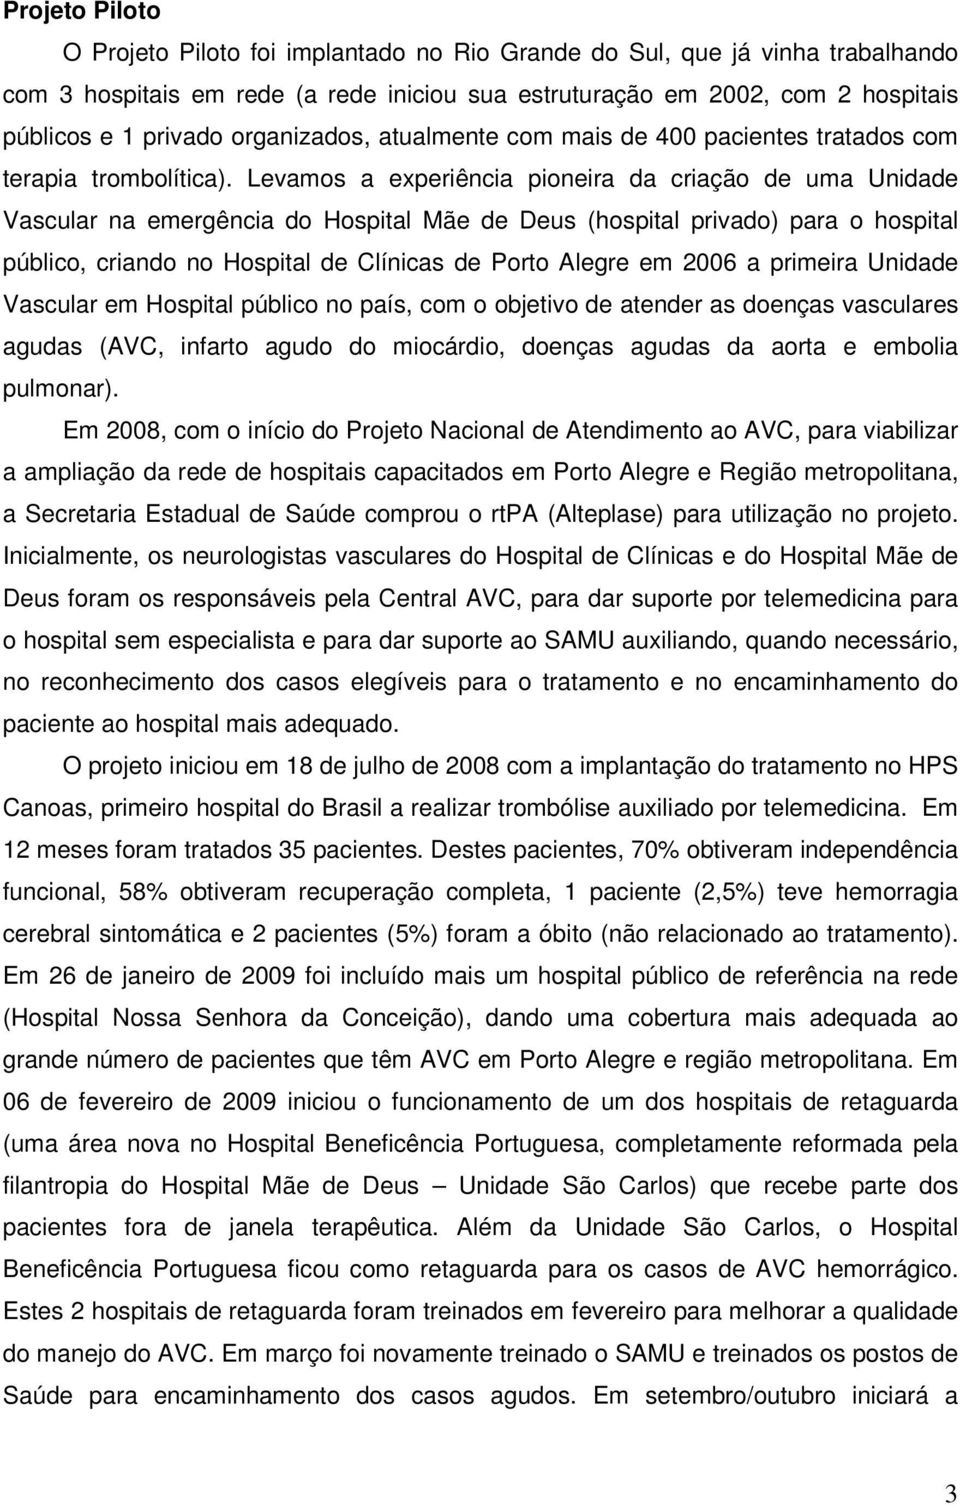 Levamos a experiência pioneira da criação de uma Unidade Vascular na emergência do Hospital Mãe de Deus (hospital privado) para o hospital público, criando no Hospital de Clínicas de Porto Alegre em